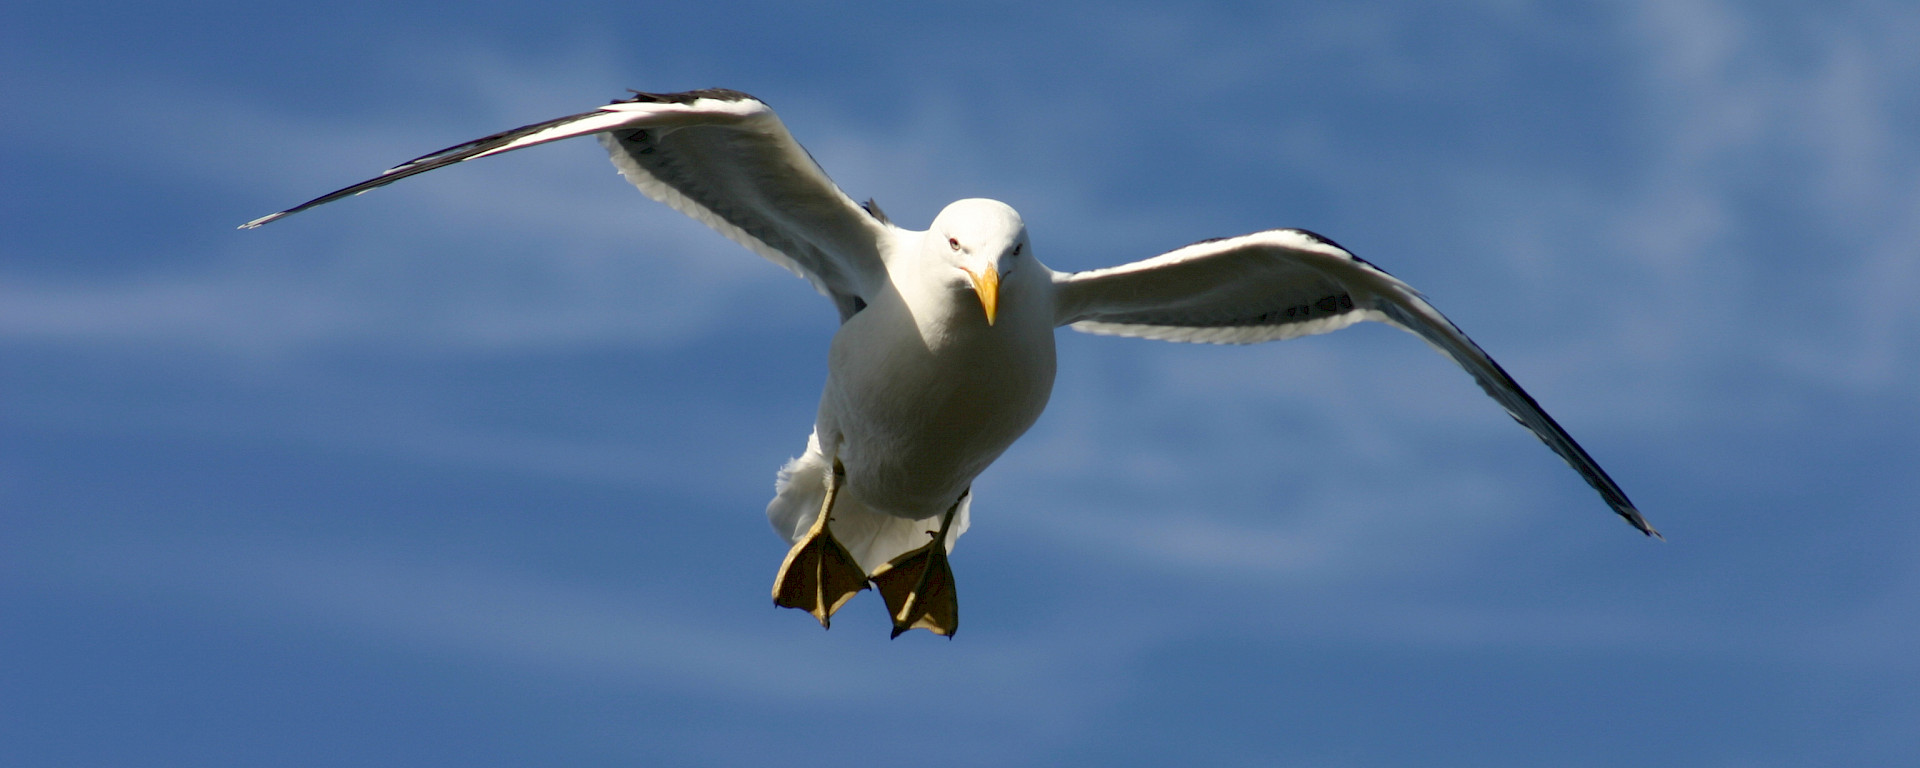 Gull flying in blue sky.